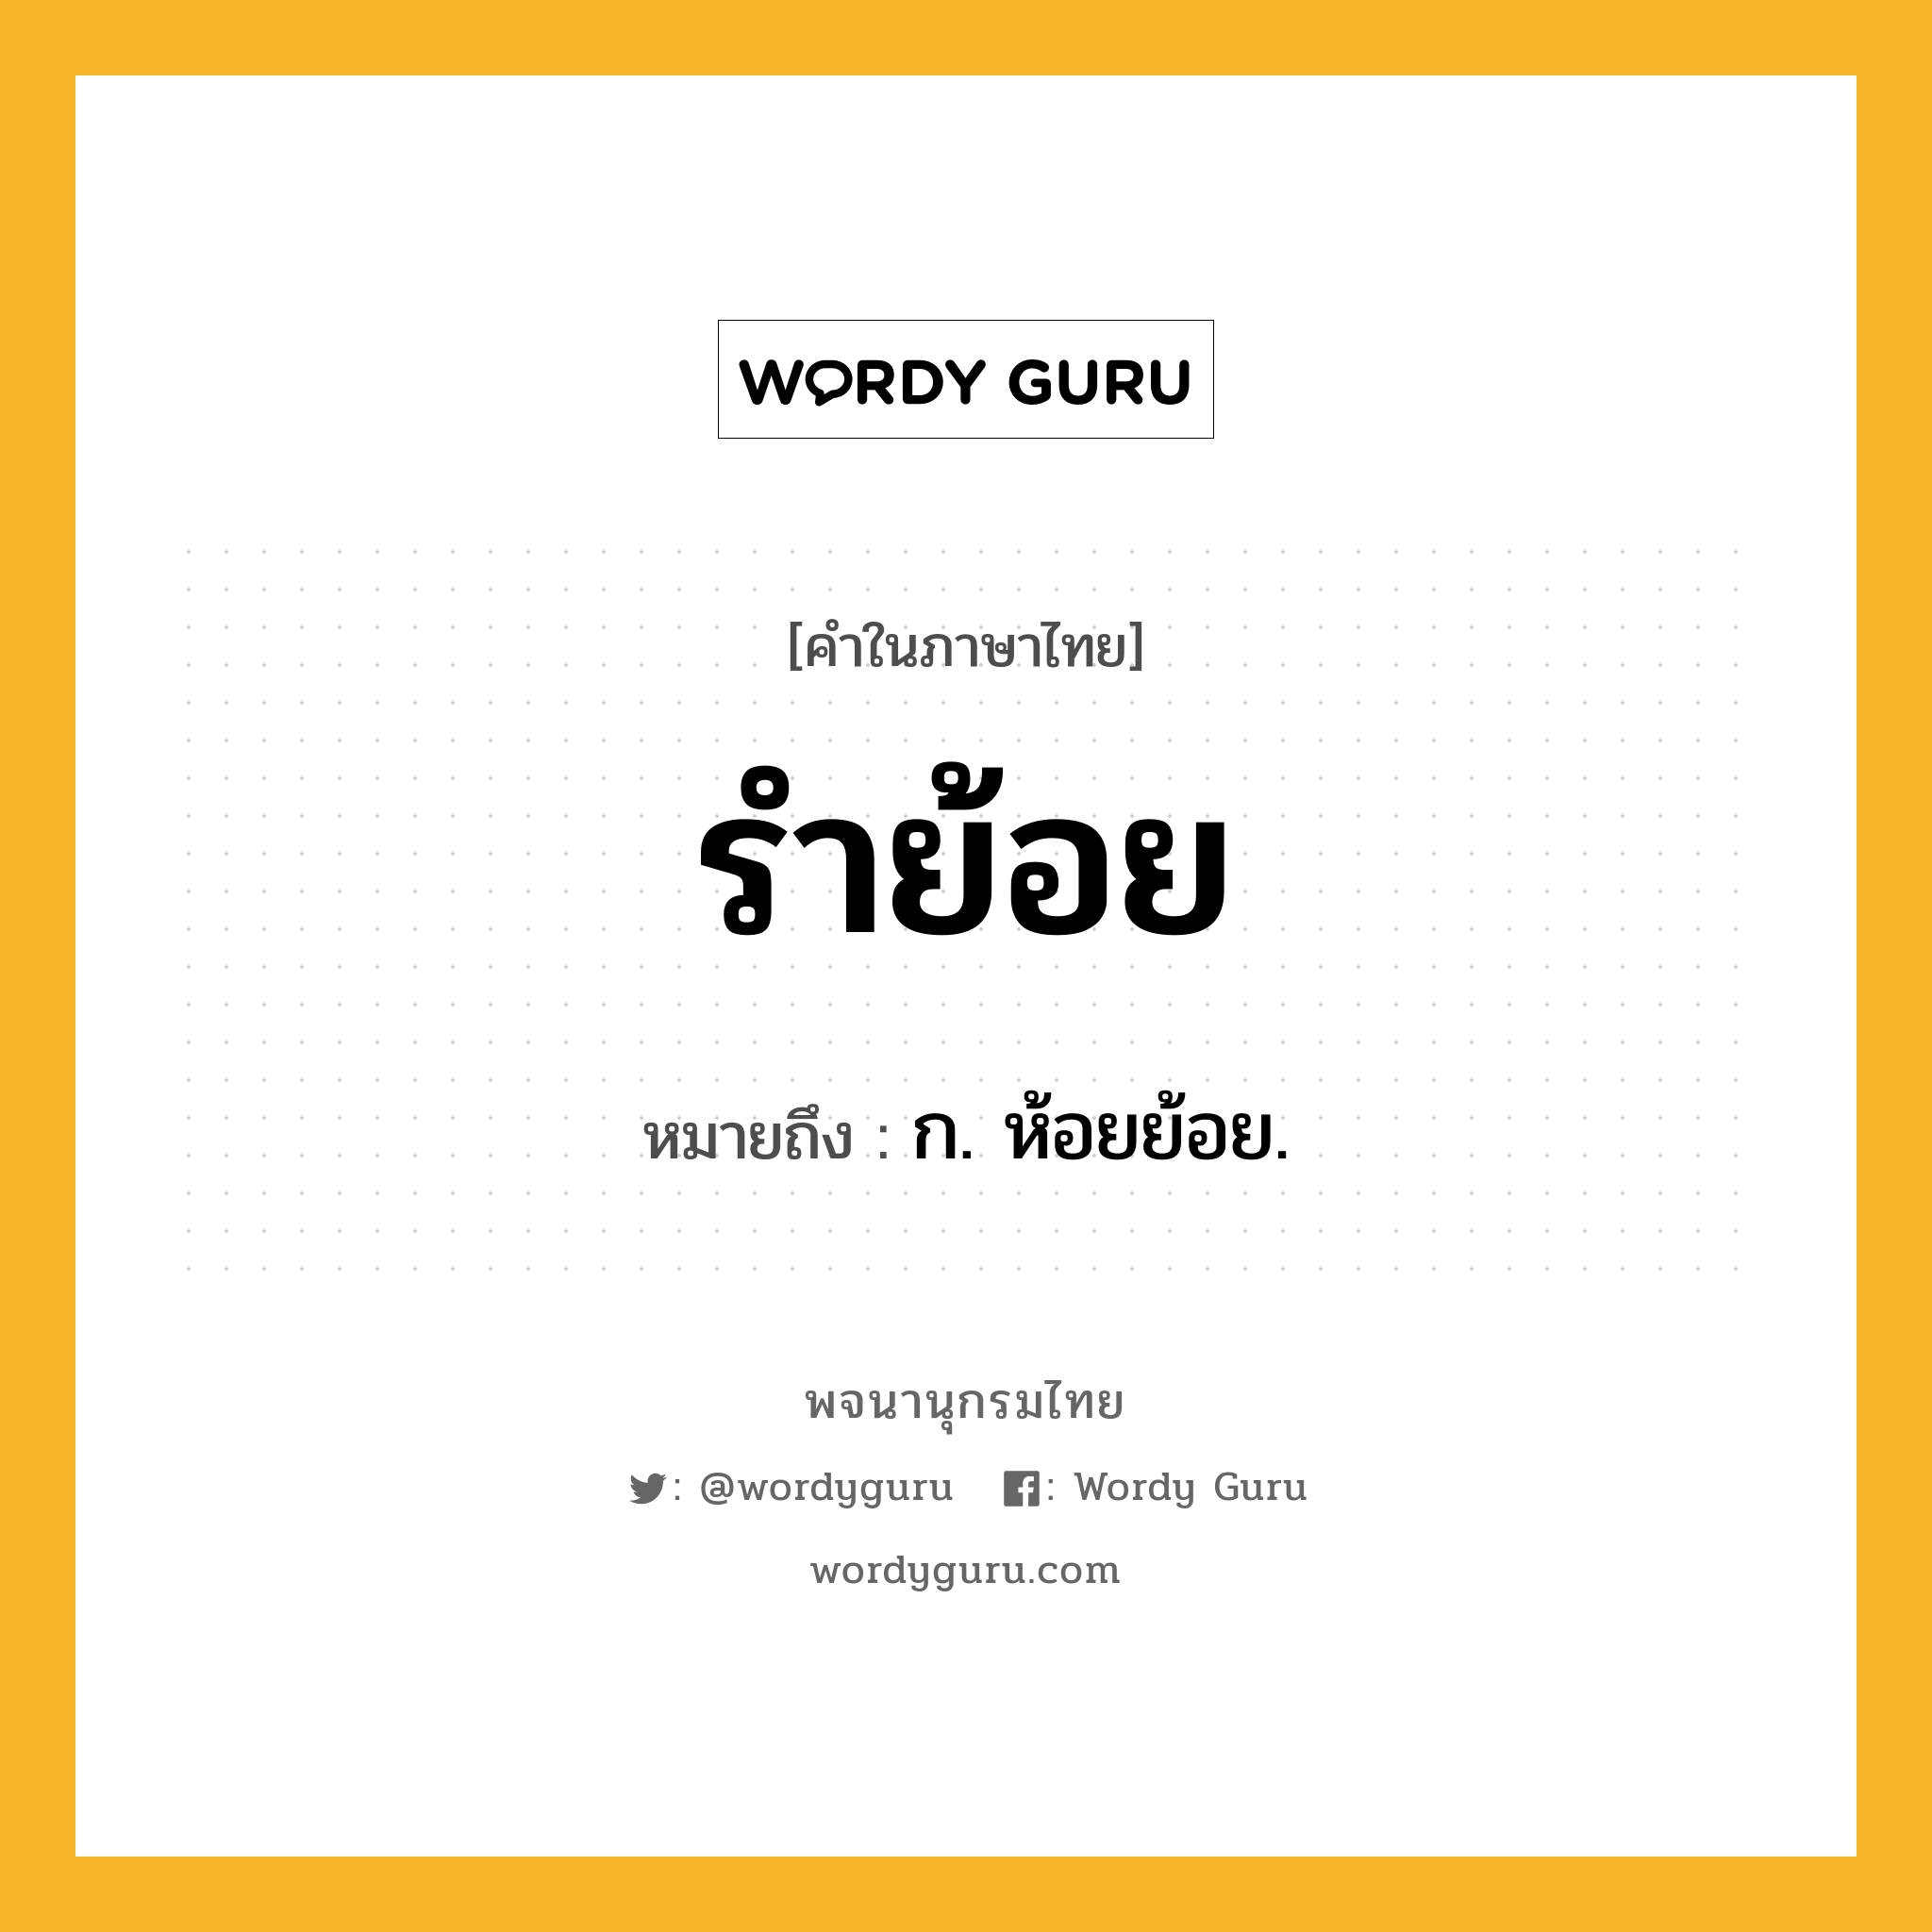 รำย้อย หมายถึงอะไร?, คำในภาษาไทย รำย้อย หมายถึง ก. ห้อยย้อย.